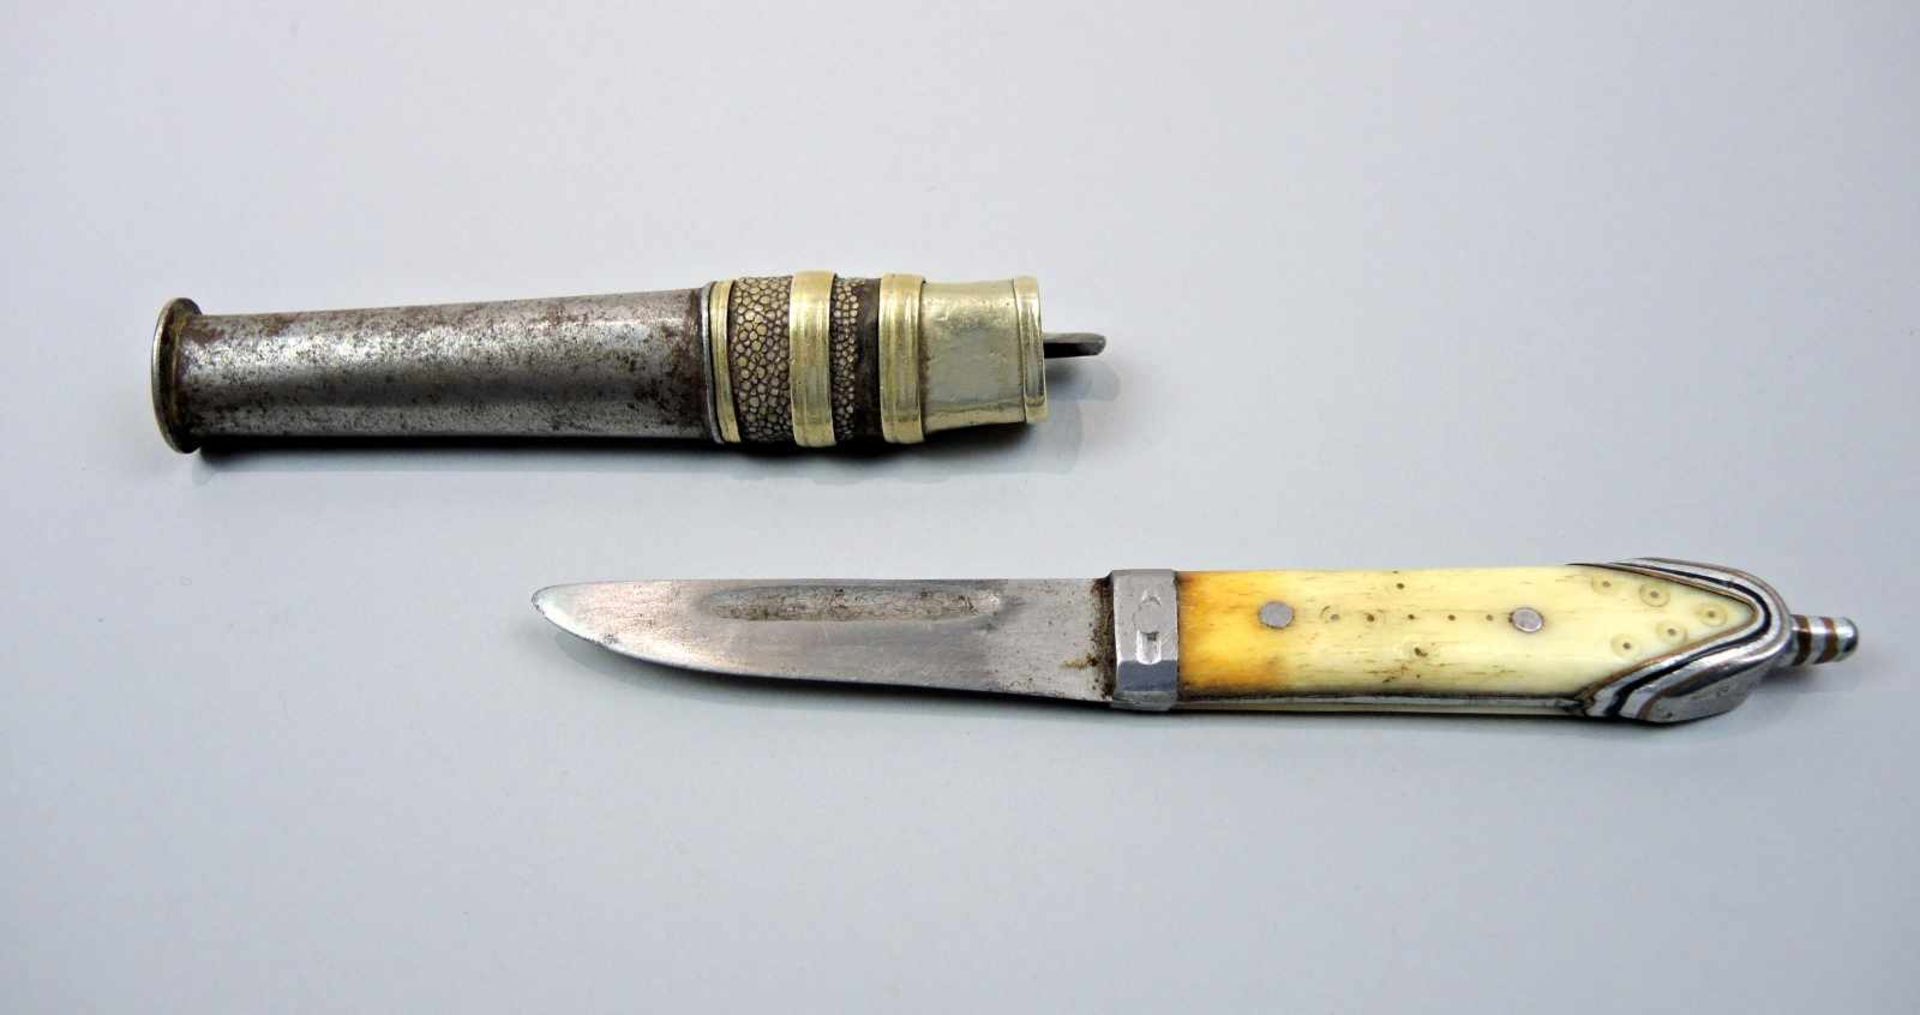 Handgearbeites Jagdmesser Metall und Horn. Handgeschliffenes Messer mit Horngriff und gold-schwarzen - Bild 2 aus 2